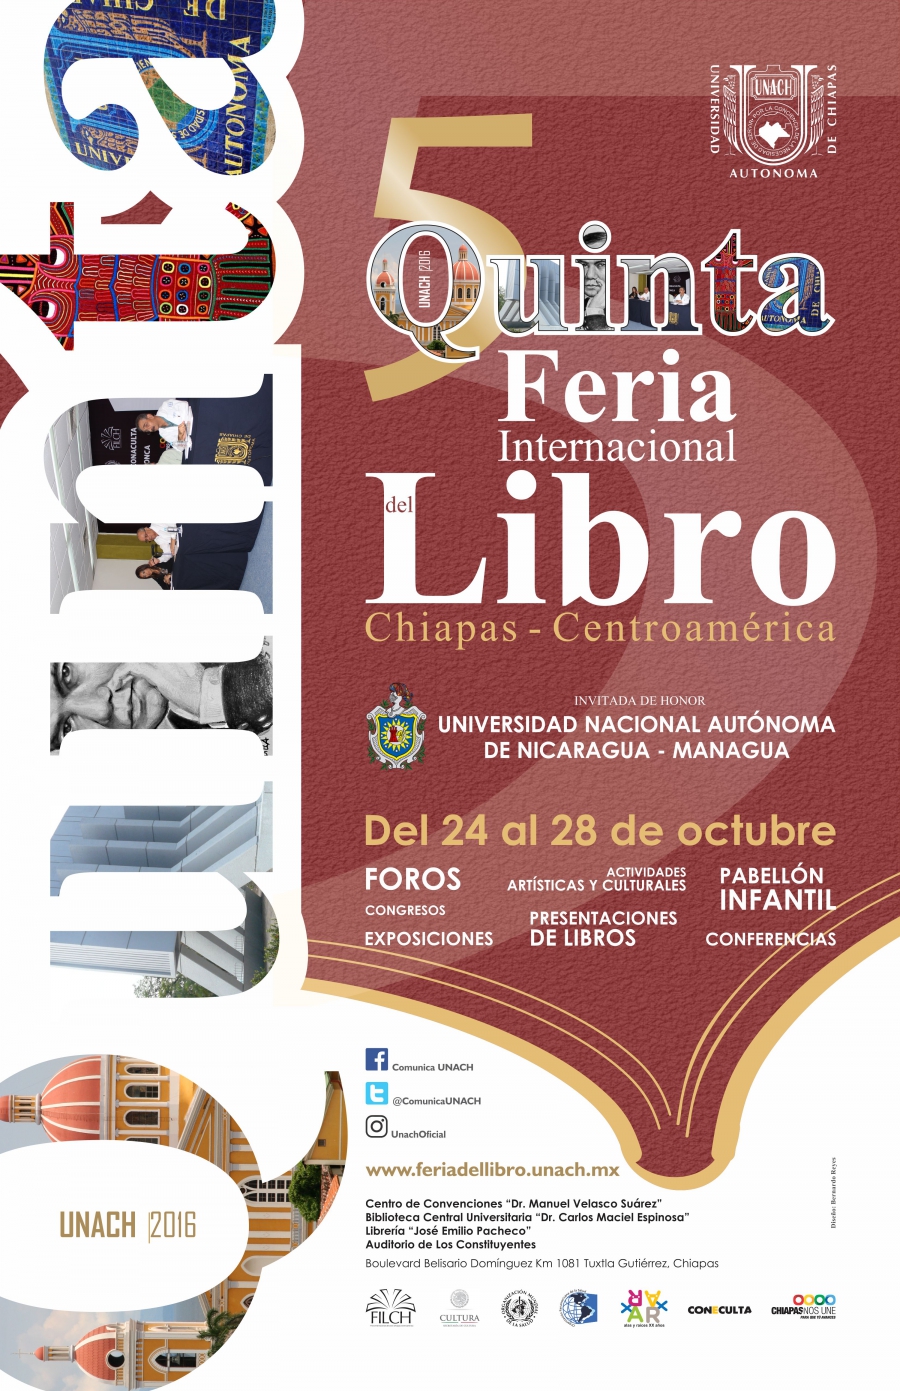 Inician las actividades de la Quinta Feria Internacional del Libro Chiapas-Centroamérica